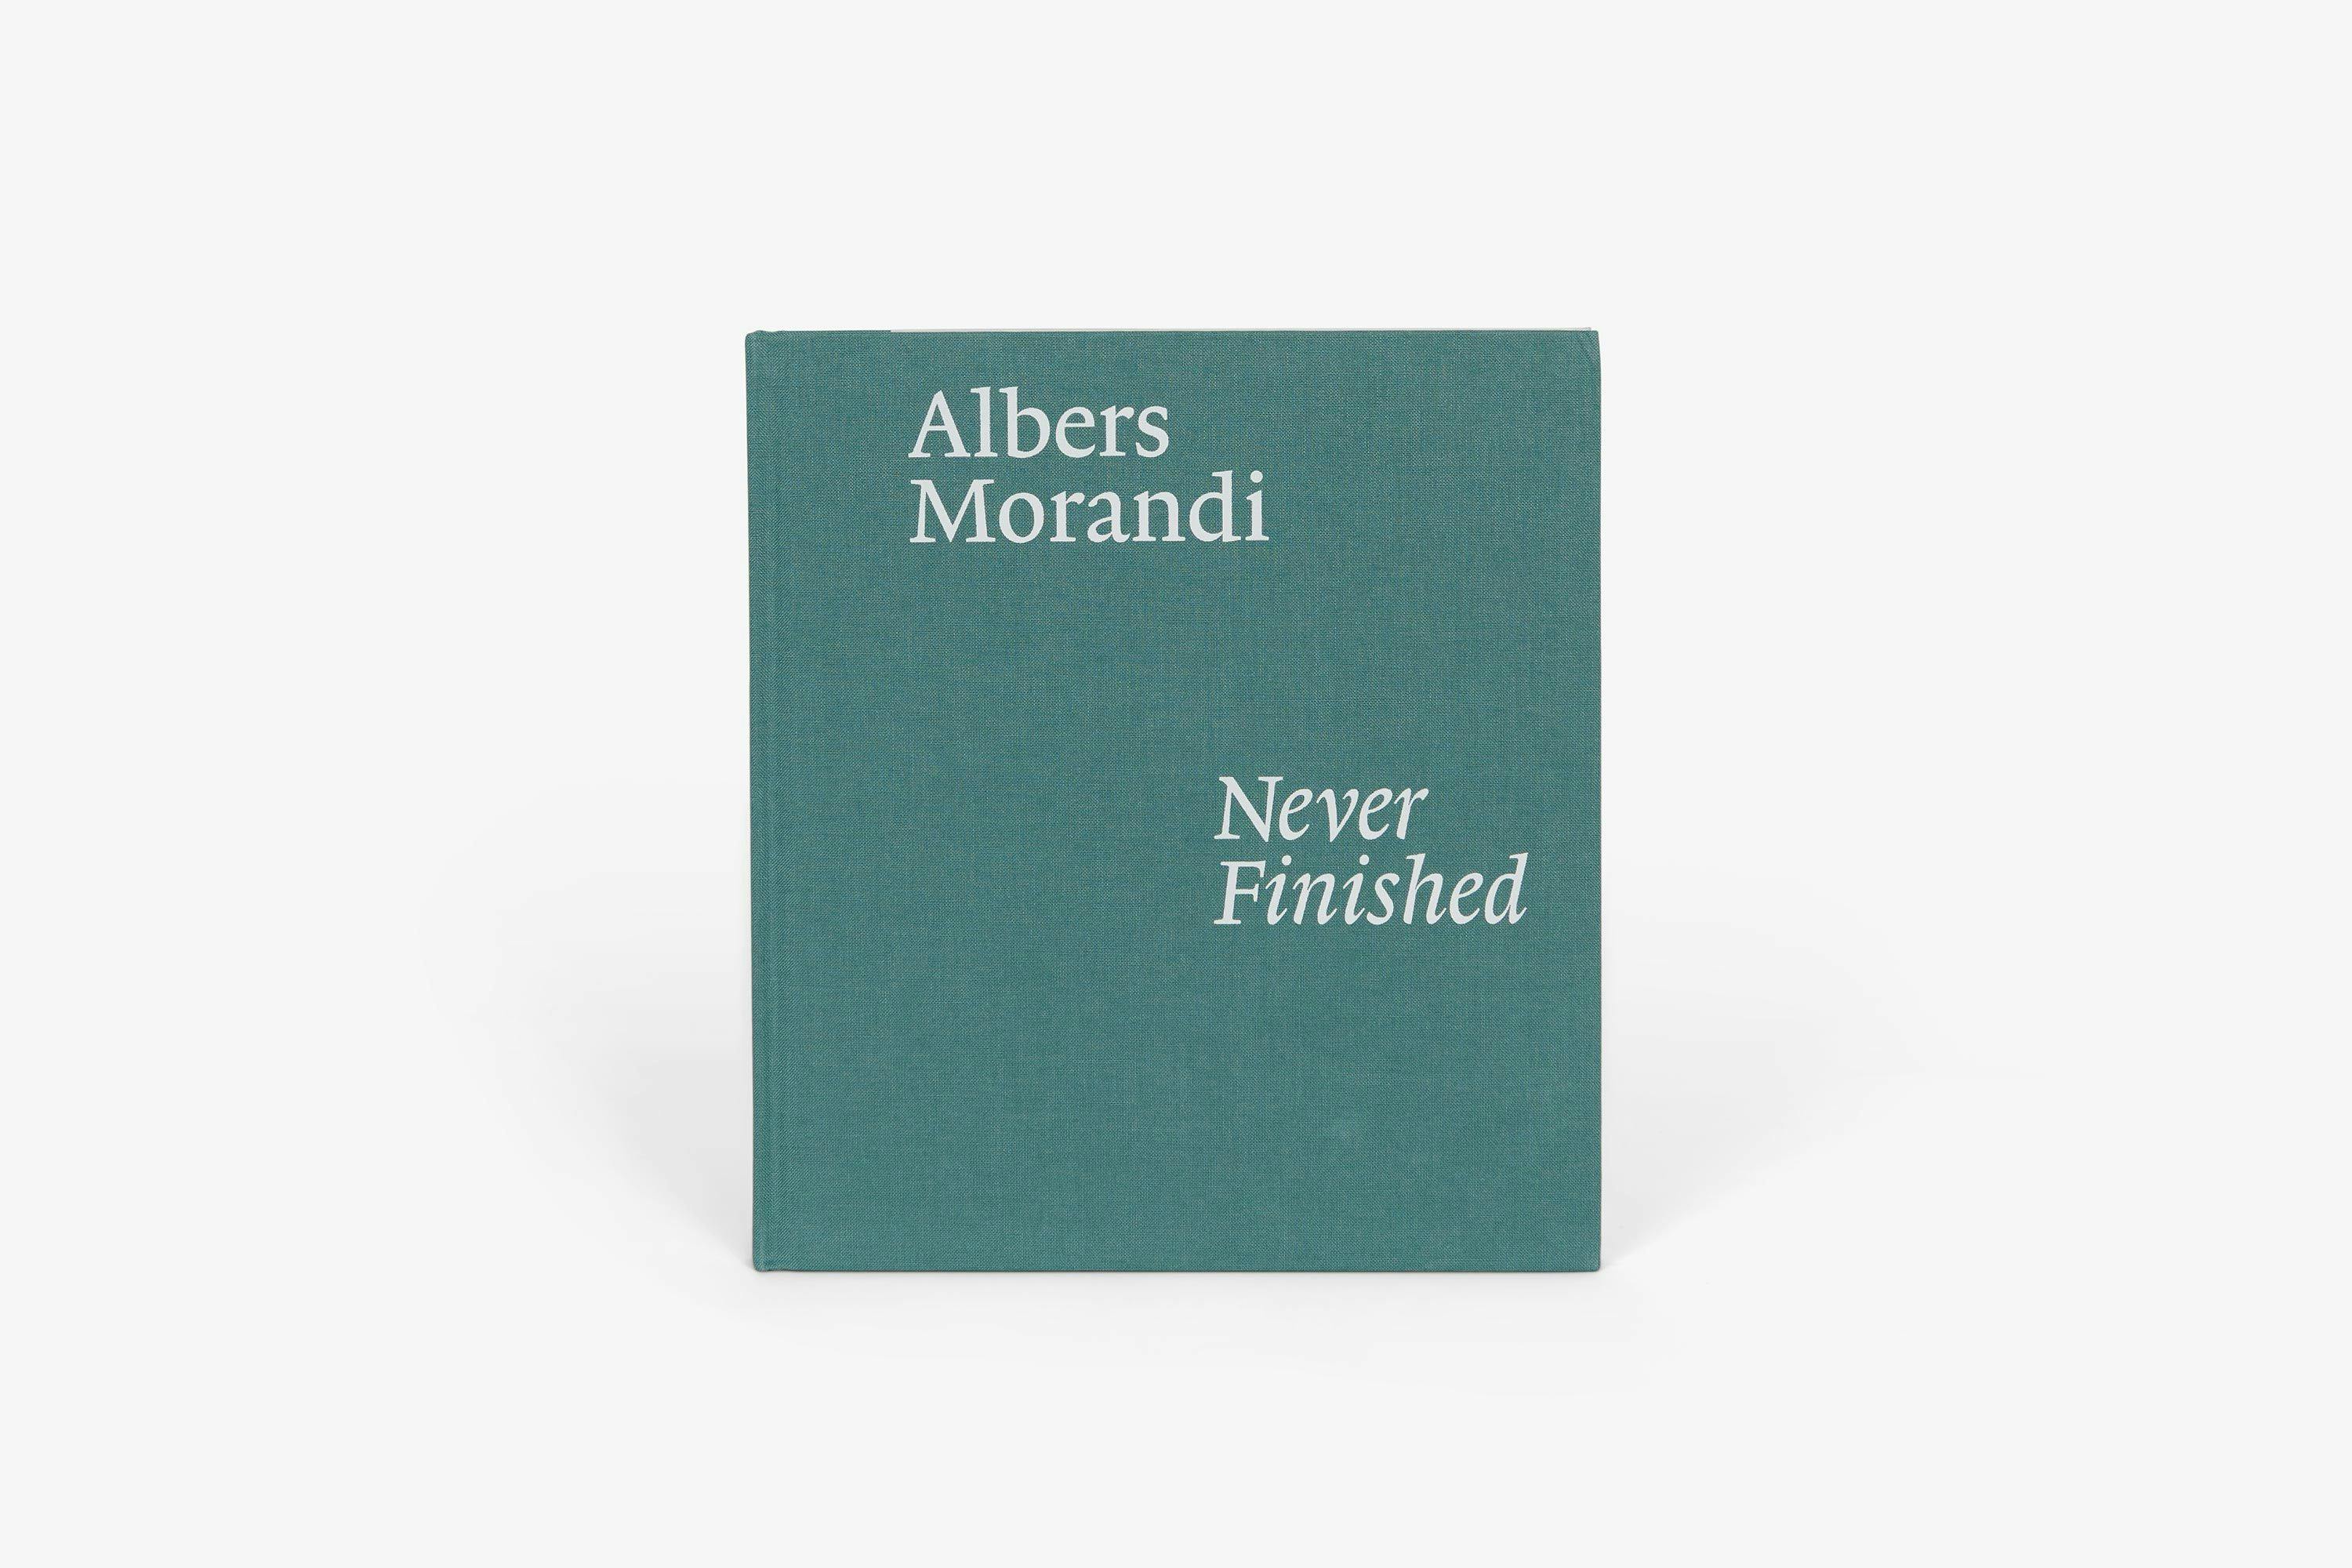 Albers and Morandi